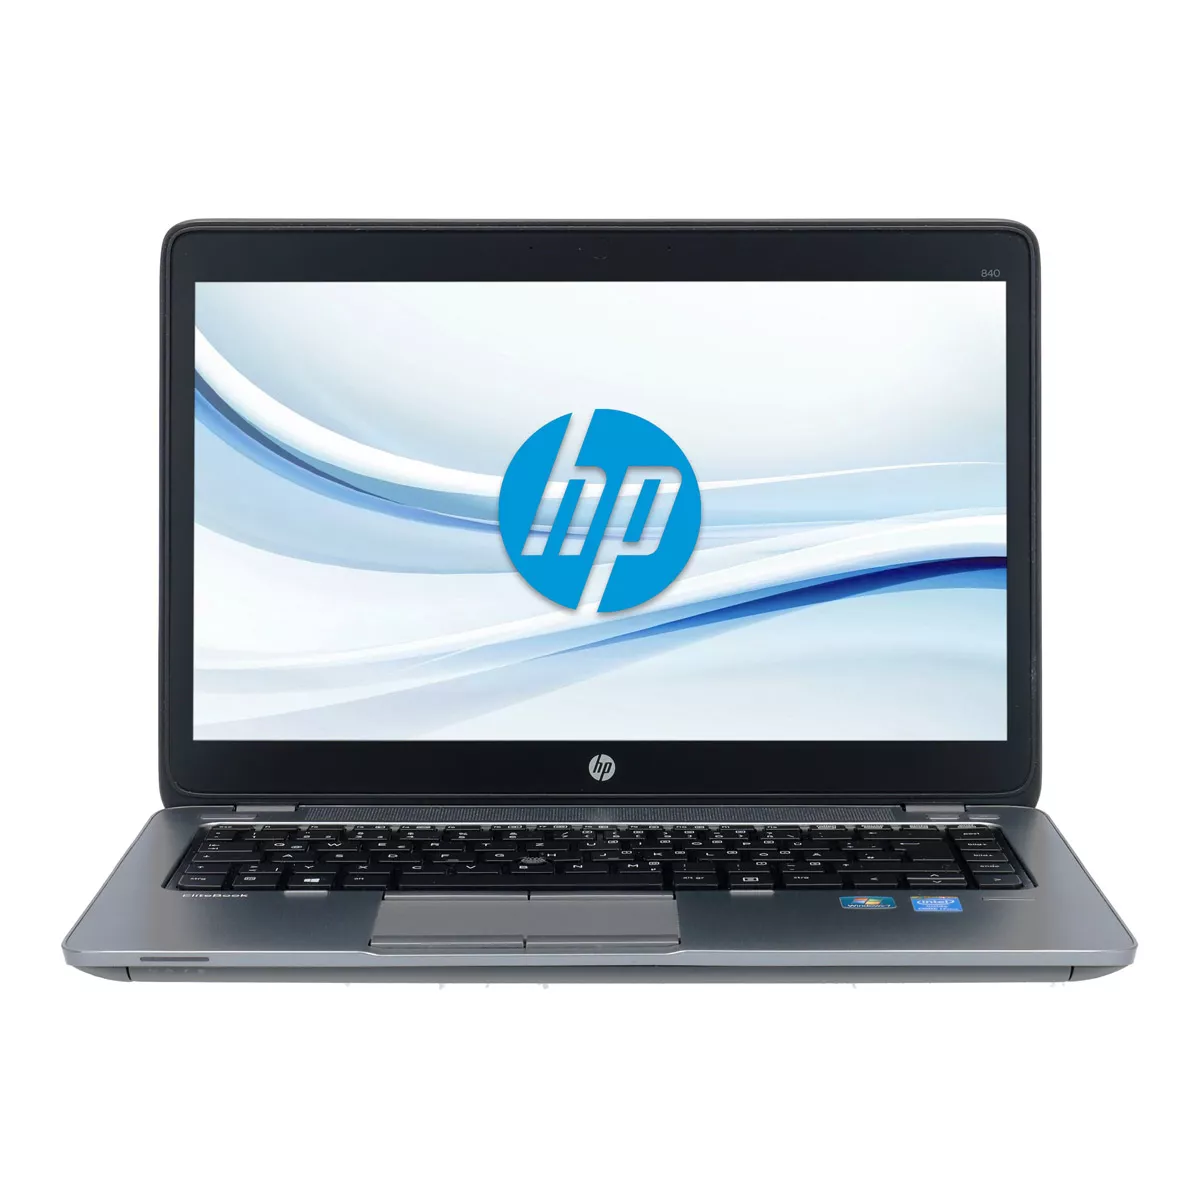 HP EliteBook 840 G2 Core i5 5300U 8 GB 240 GB SSD Webcam A+